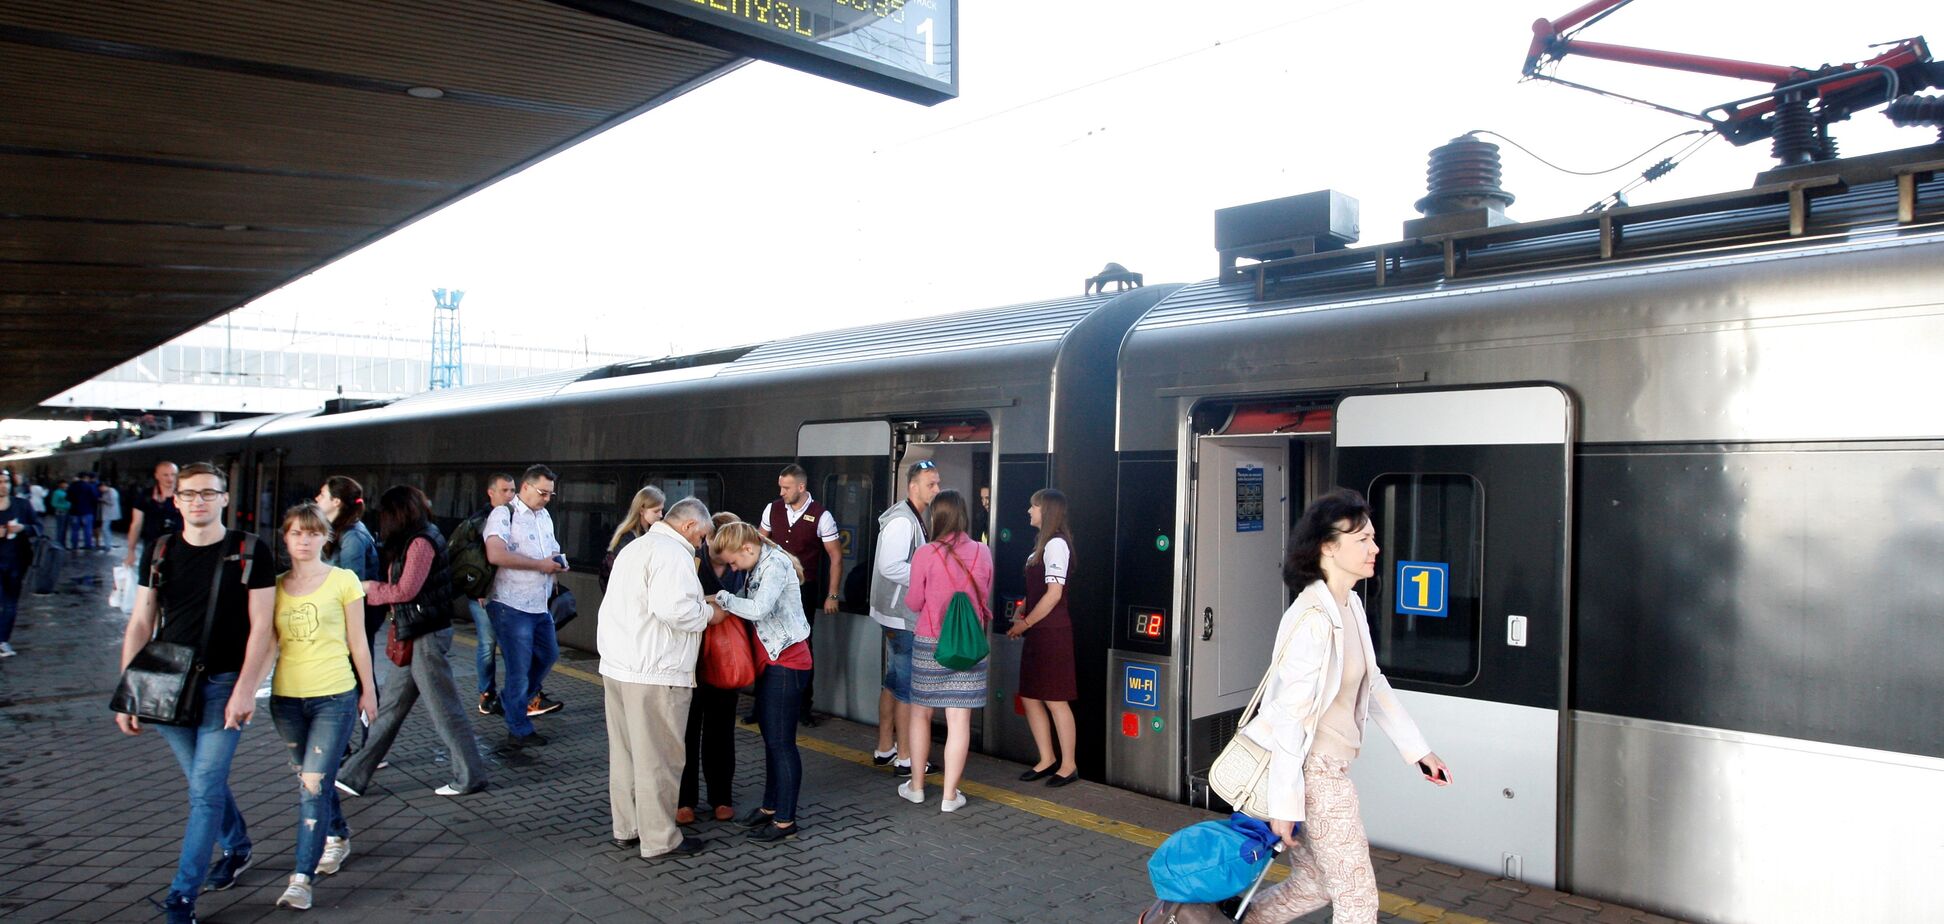  'Укрзалізниця' запустила десятки 'летних' поездов: опубликован список